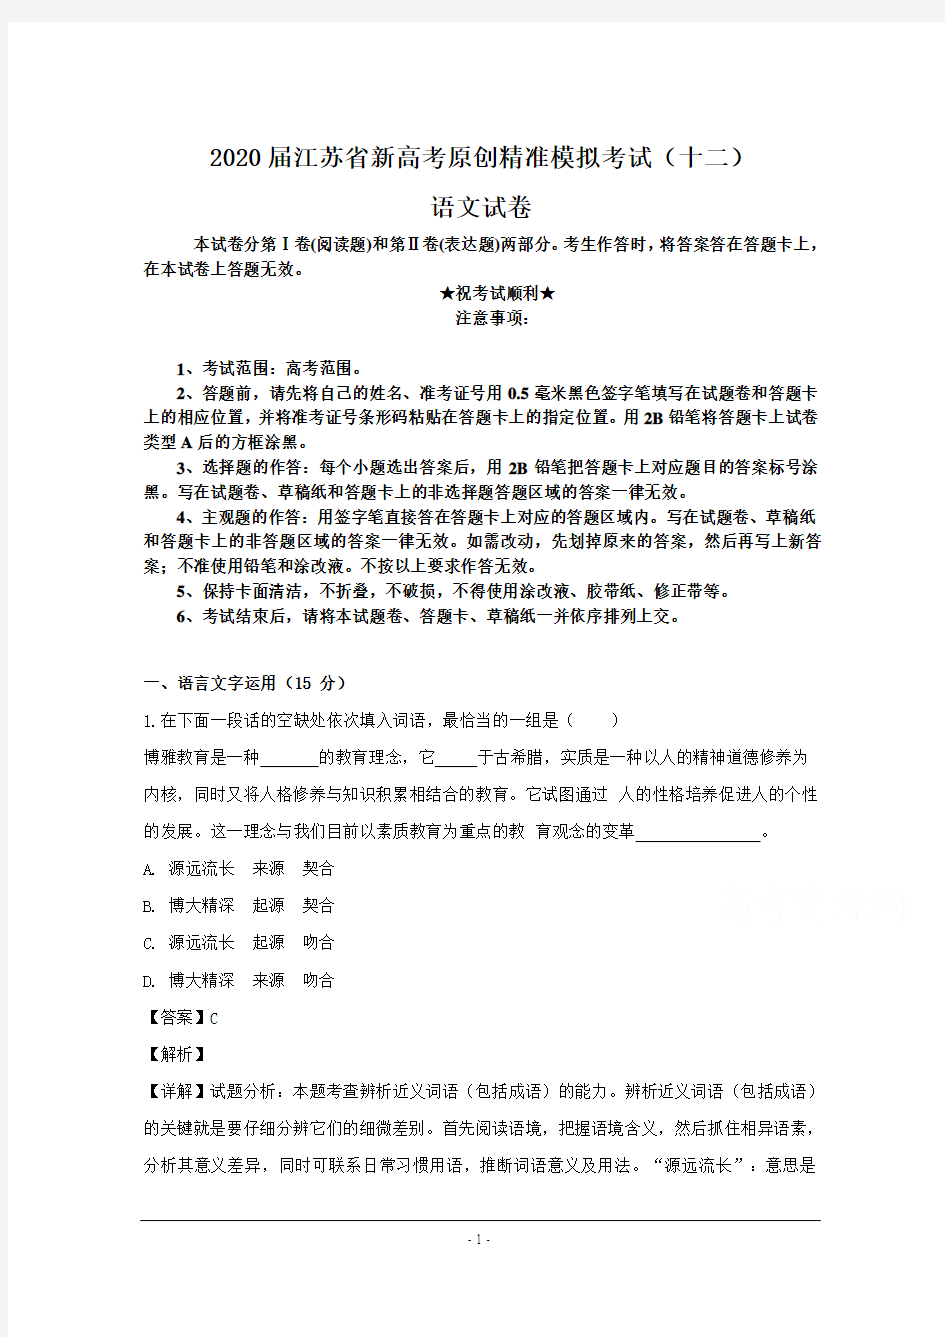 2020届江苏省新高考原创精准模拟考试(十二)语文试卷